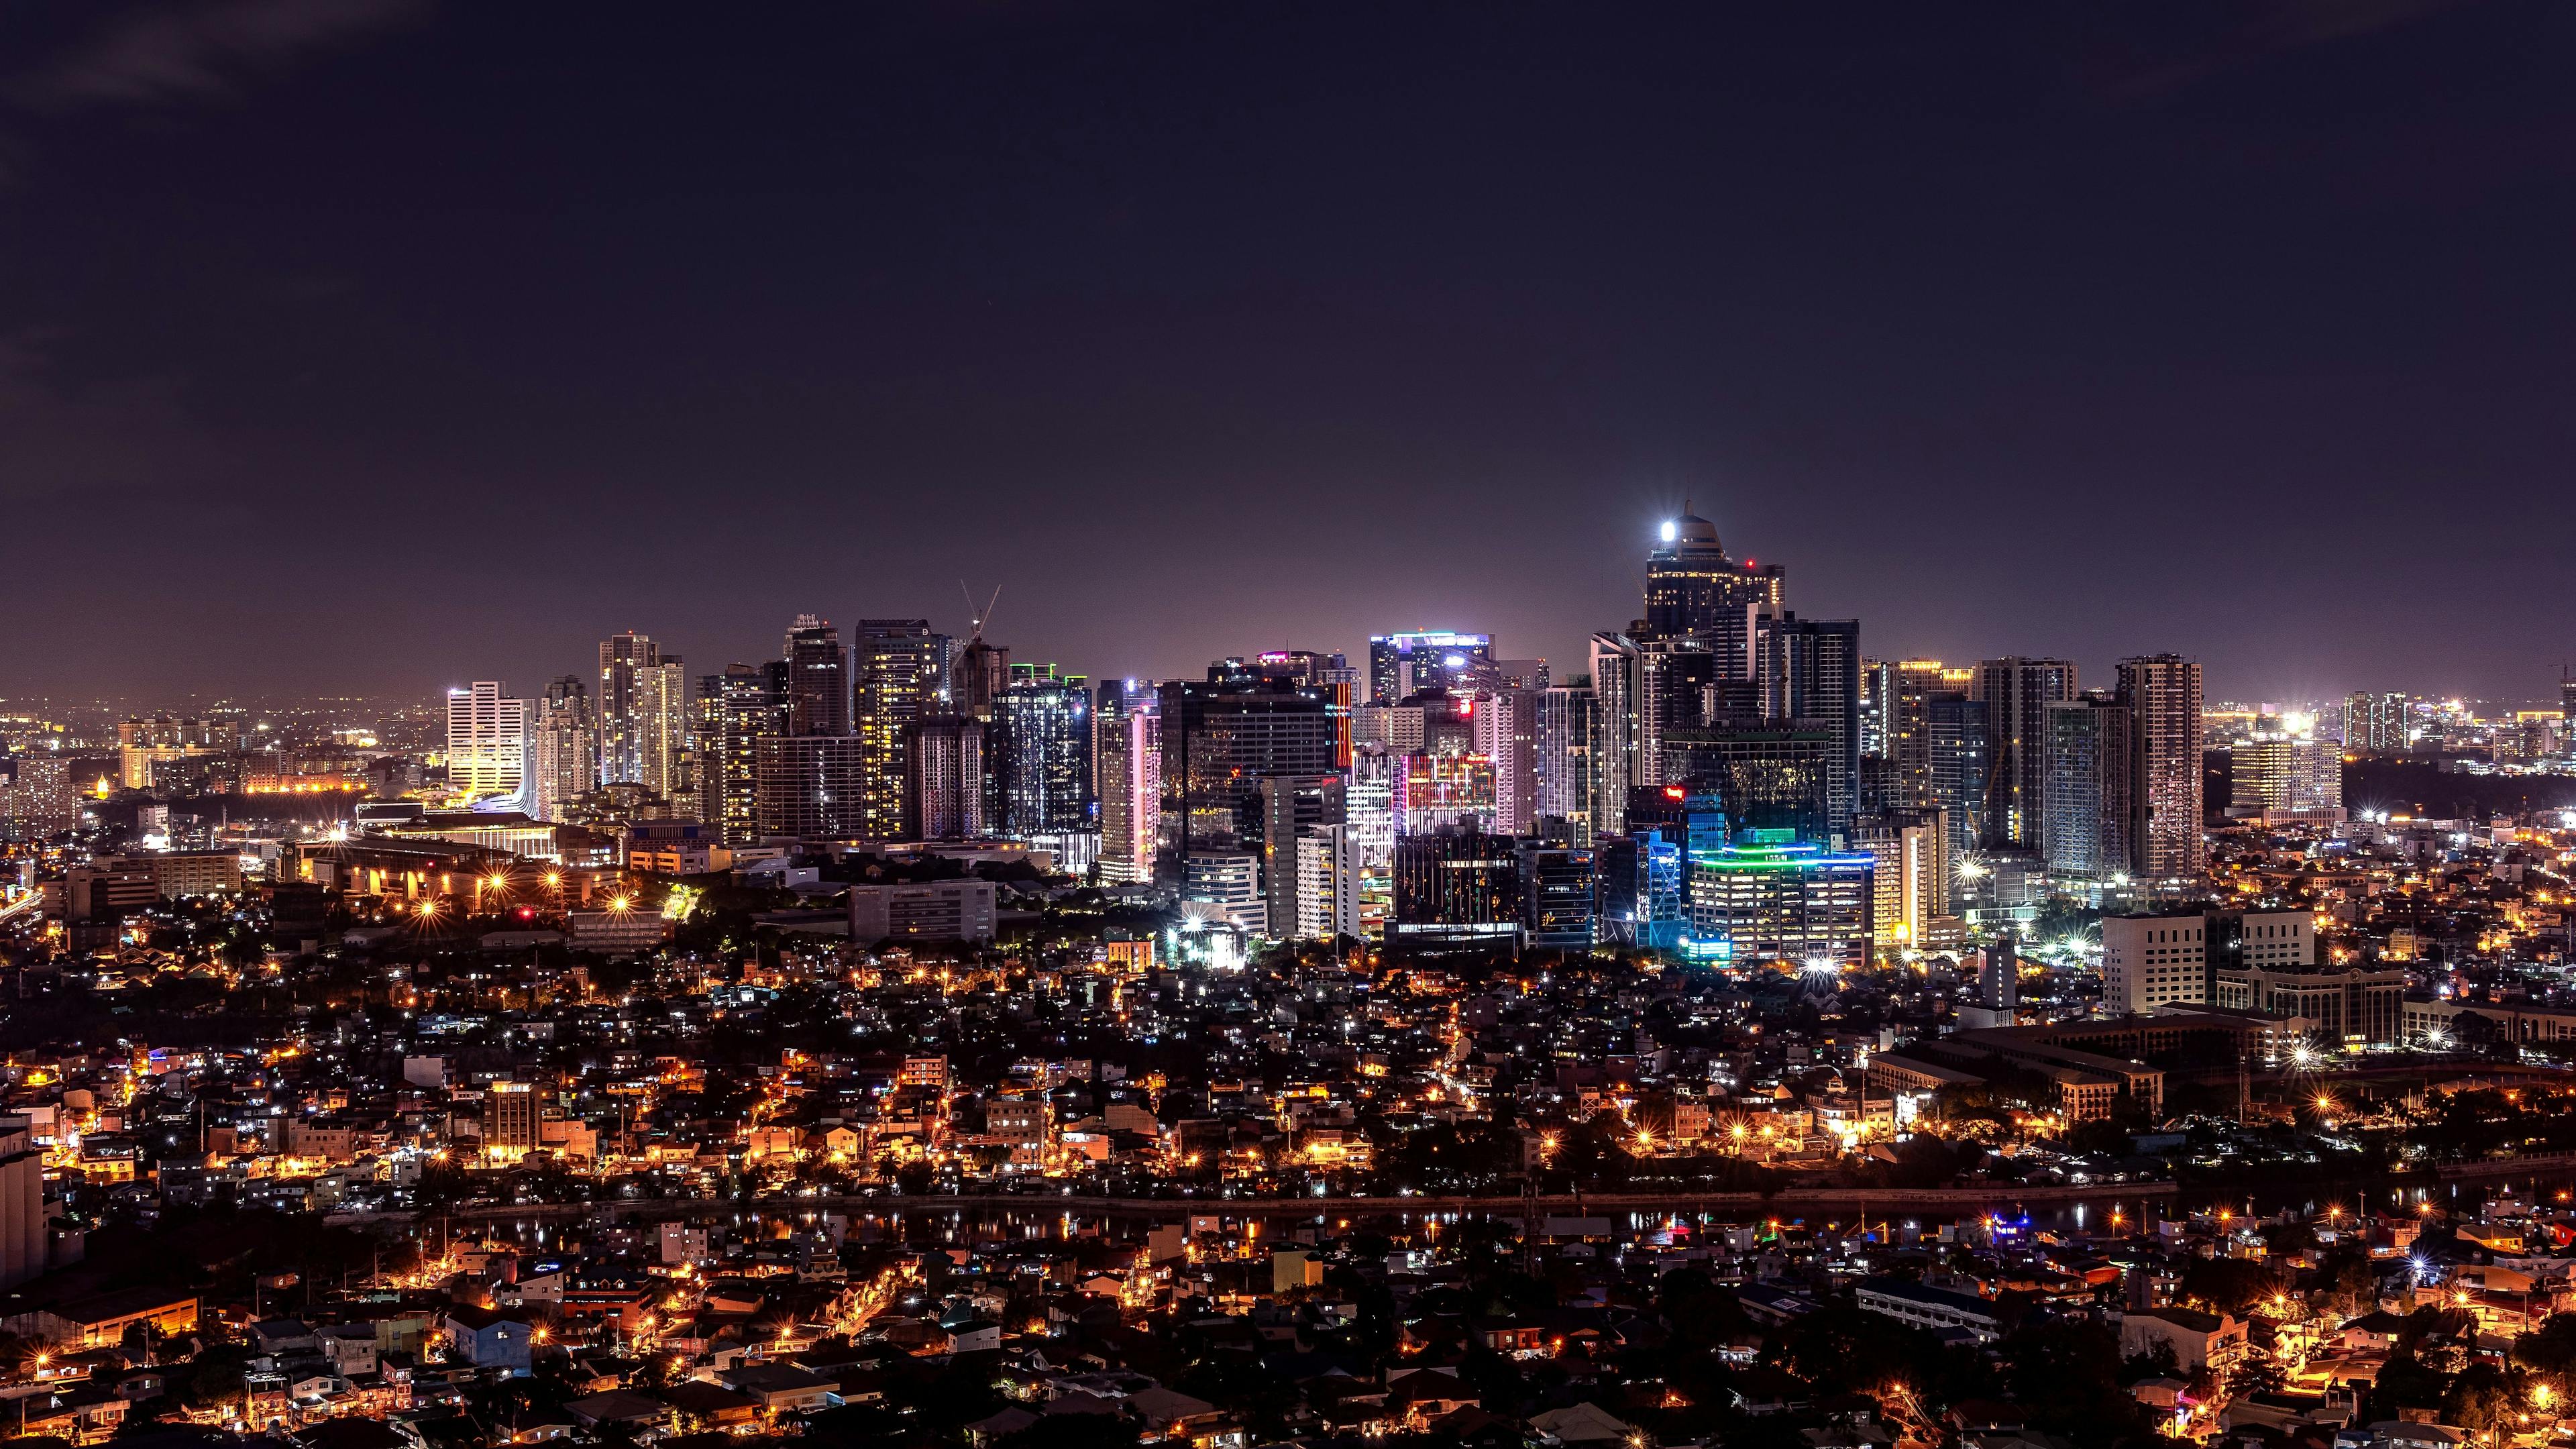 Skyline of Makati in Manila Philippines during night